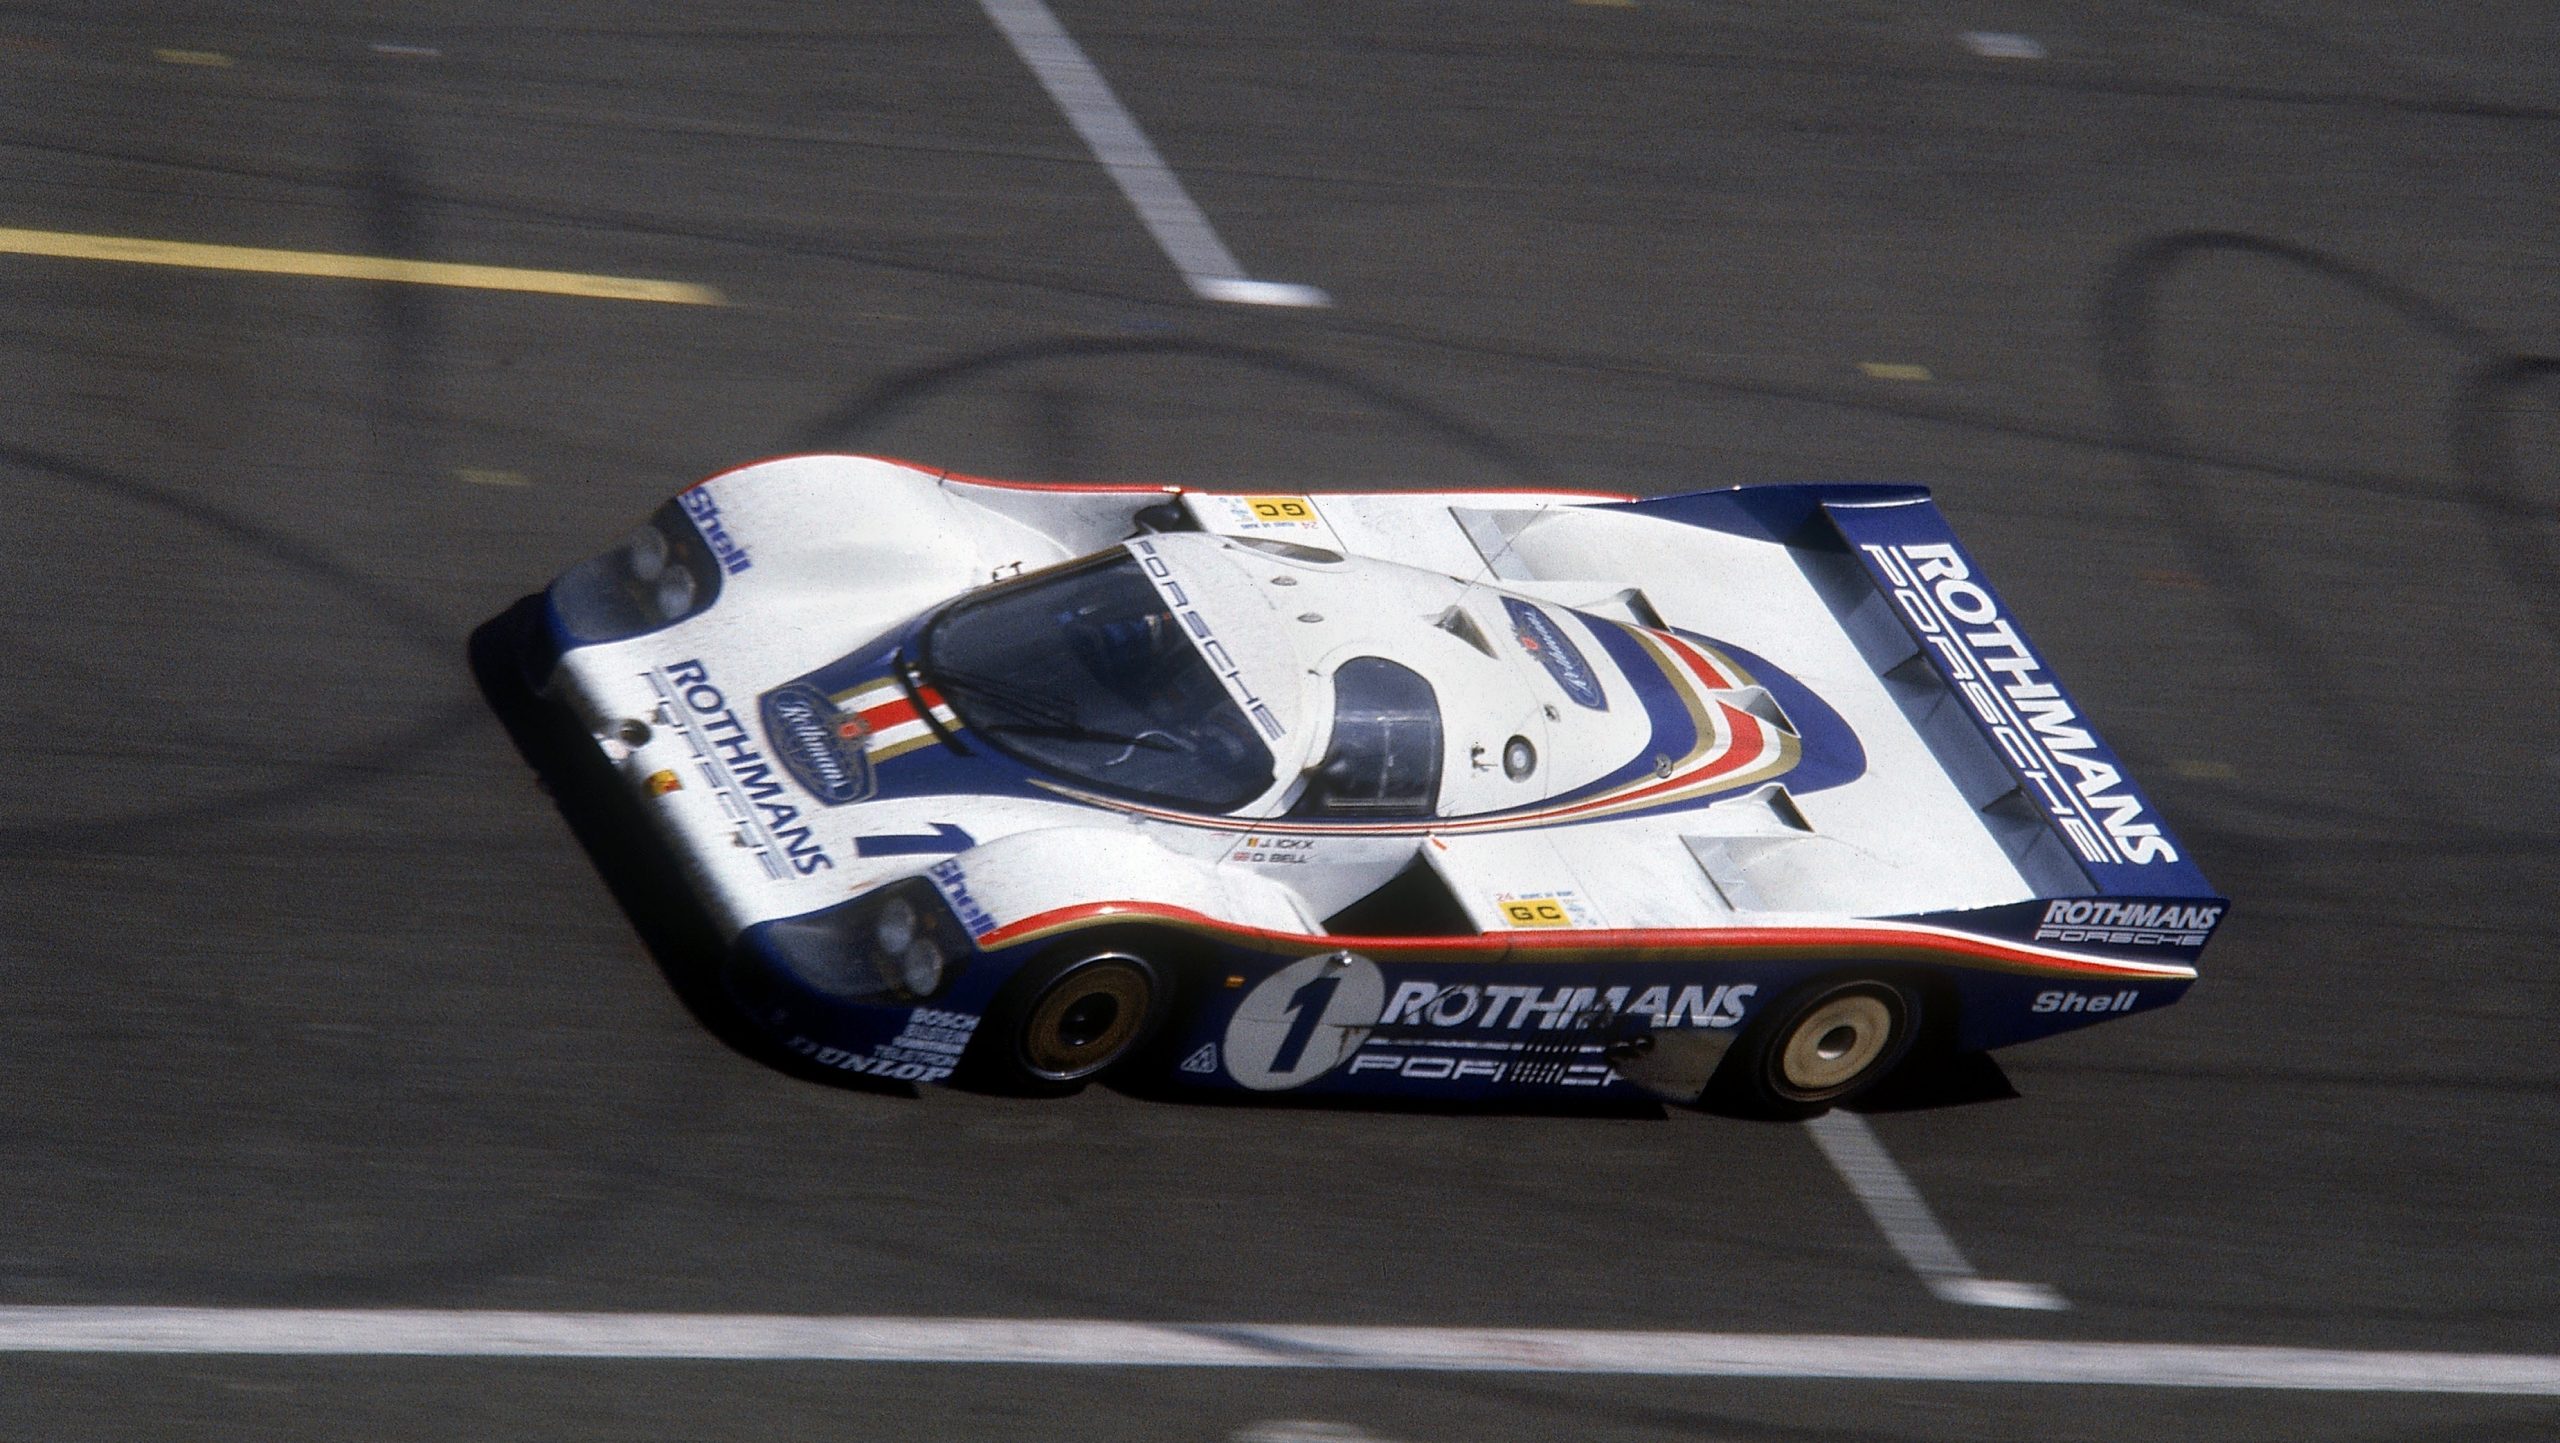 The Porsche 956 at the 1982 Le Mans 24 hour race